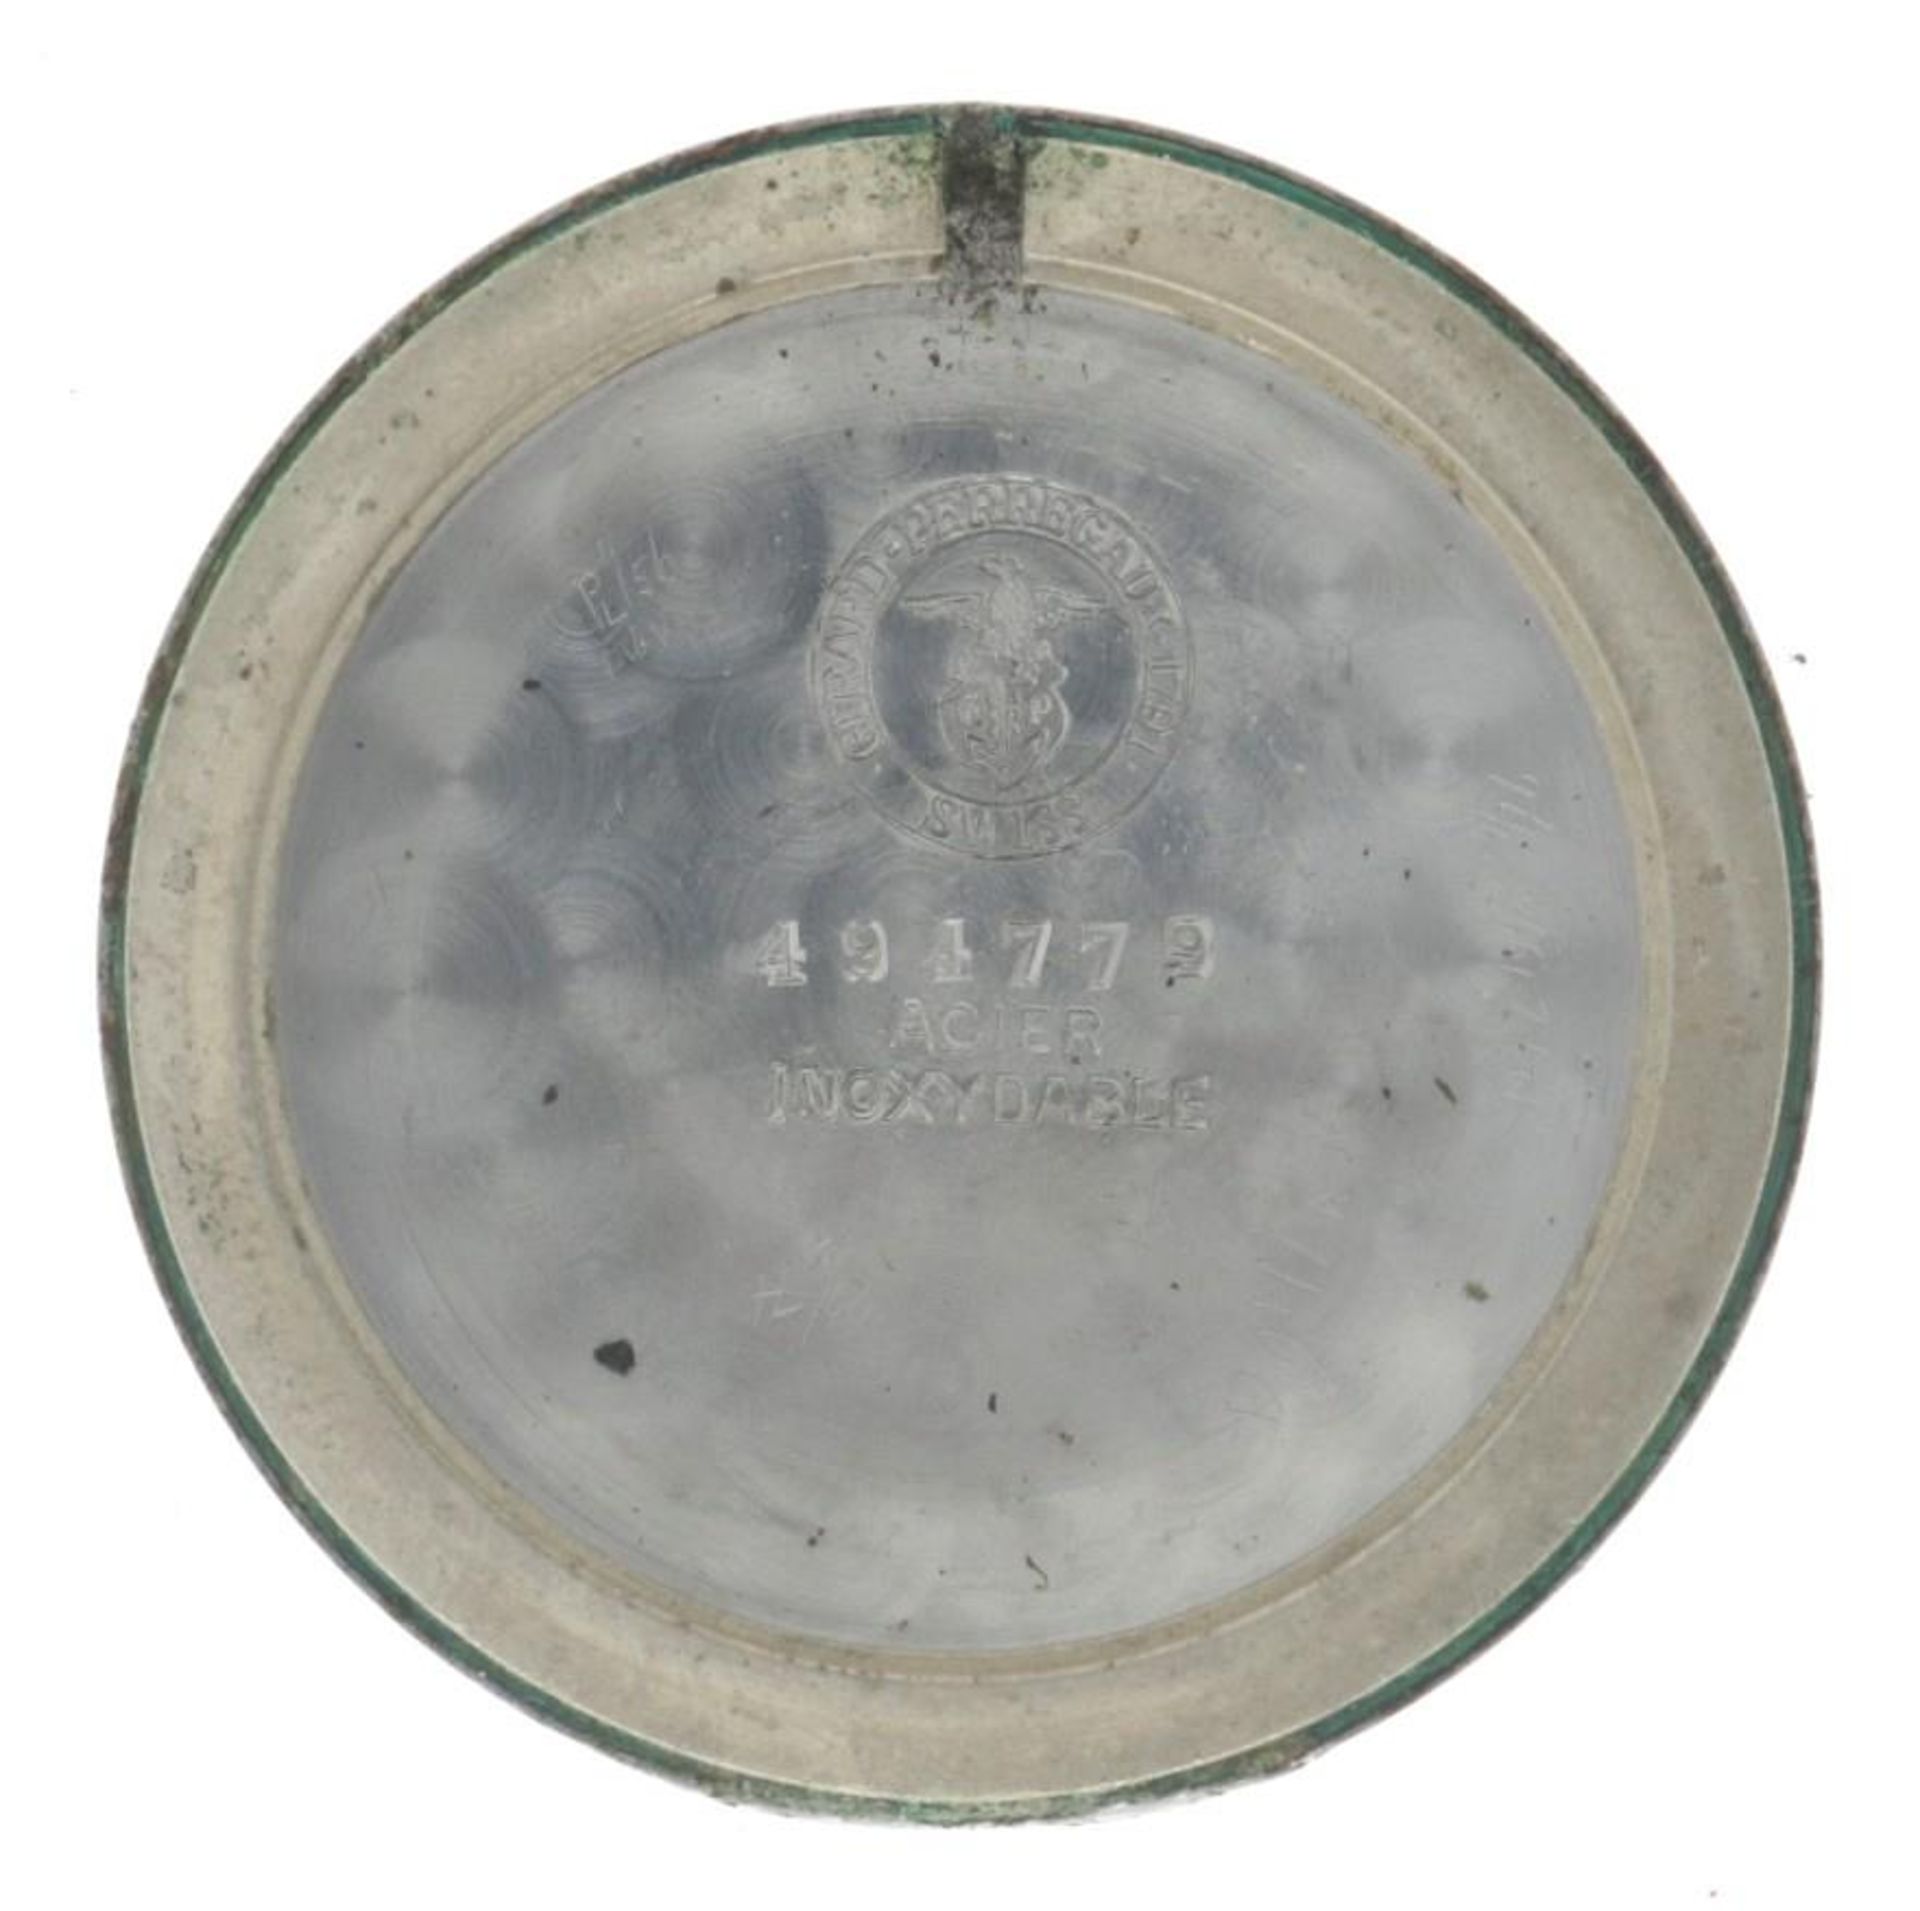 Girard-Perregaux Dogleg 494779 - Men's watch - approx. 1950. - Image 14 of 14